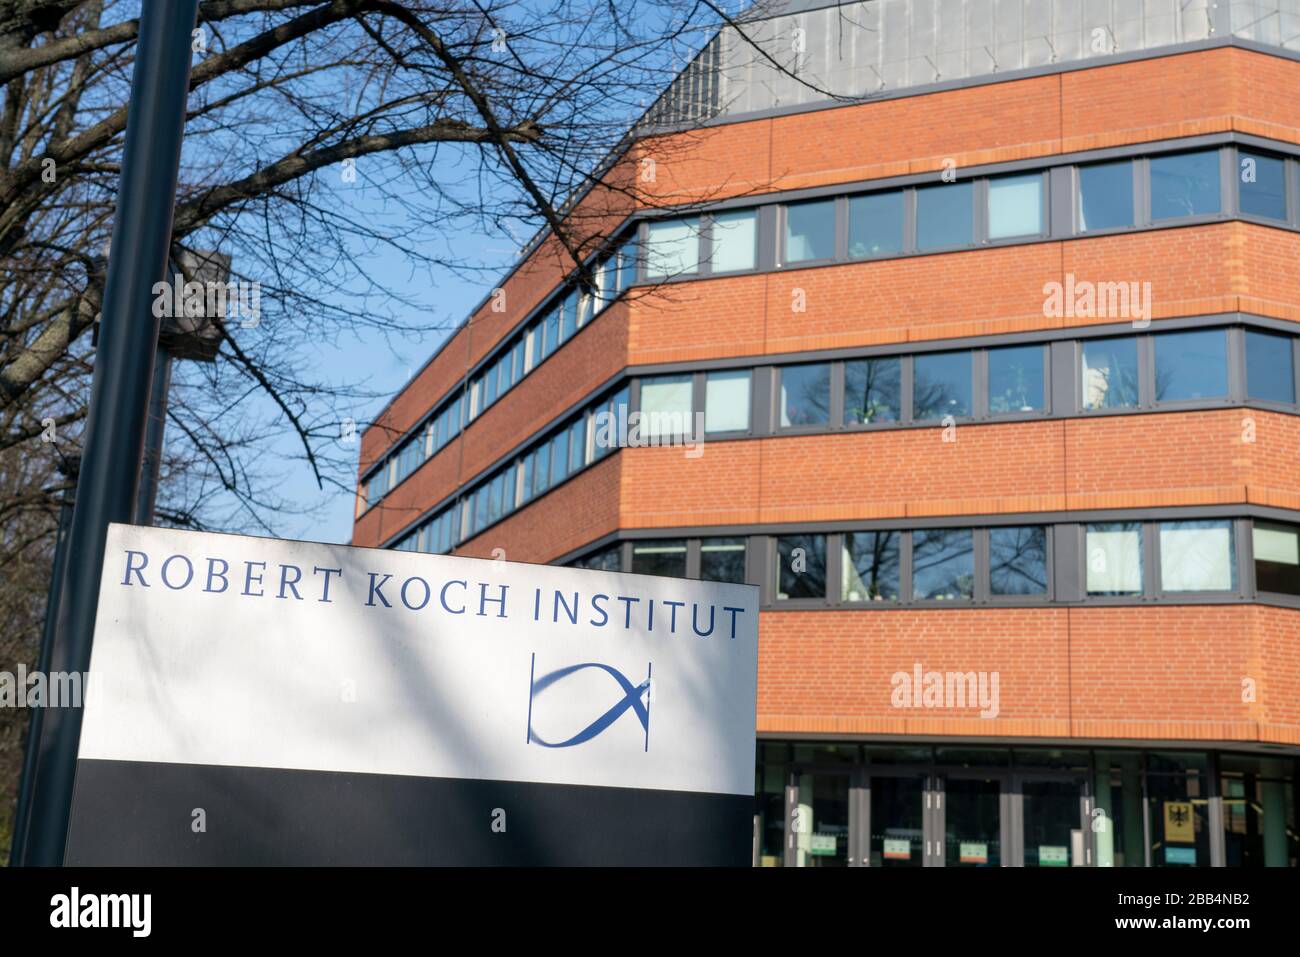 Robert Koch Institut Seestrasse Berlín . Deutsche Bundesoberbehörde für Infektionskrankheiten und nicht übertragbed Krankheiten Foto de stock